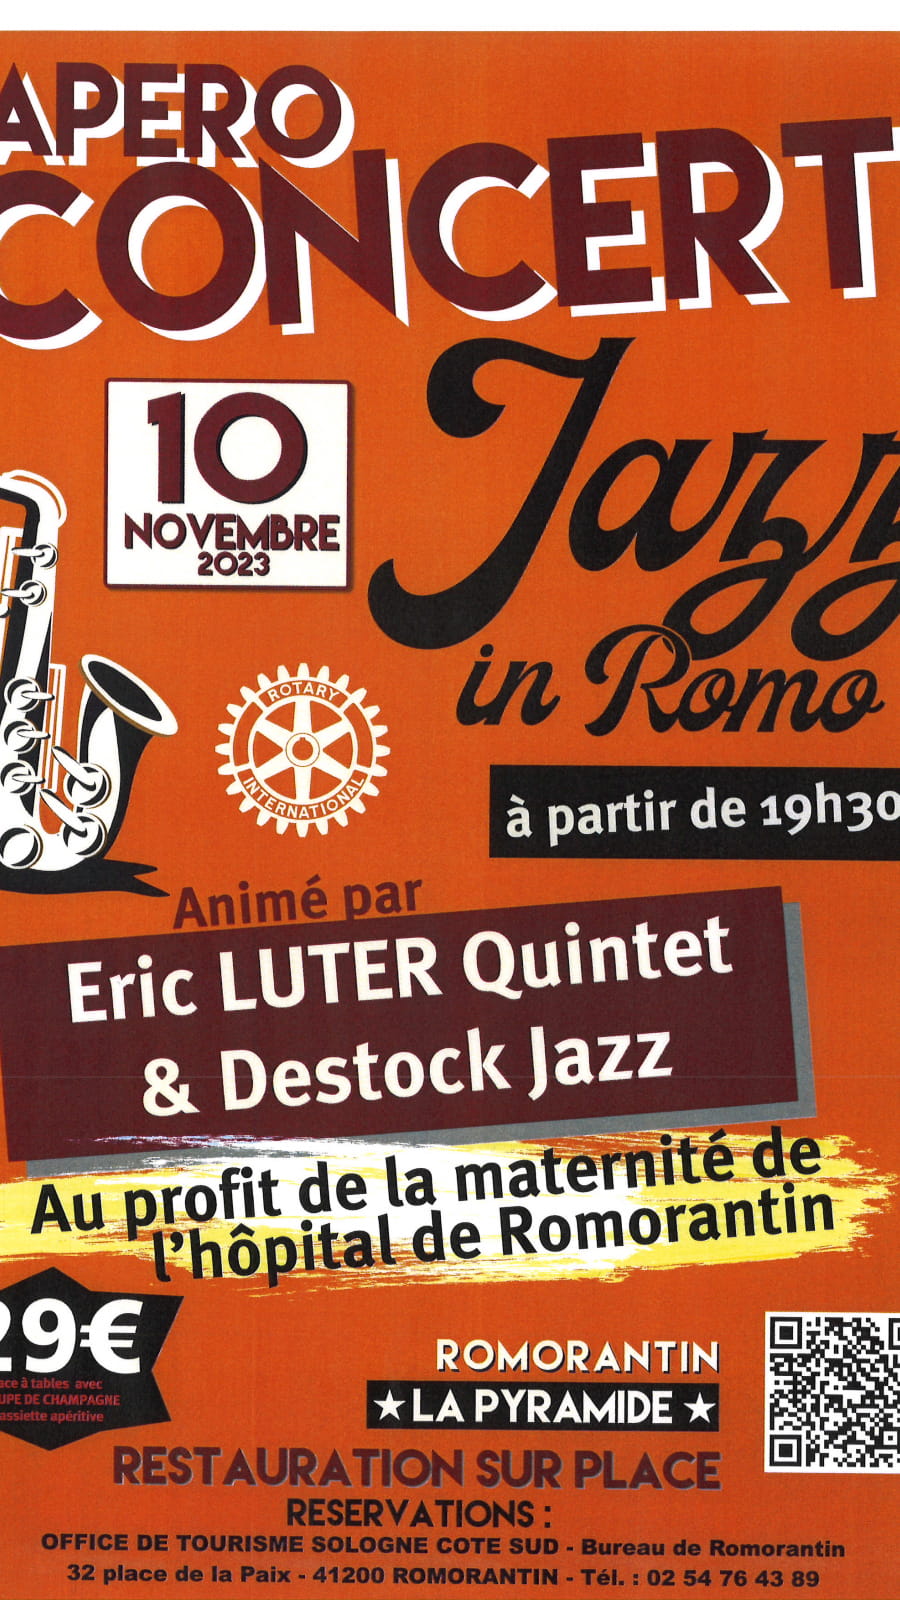 Apéro concert jazz in Romo 'Eric Luter Quintet et Destock Jazz'